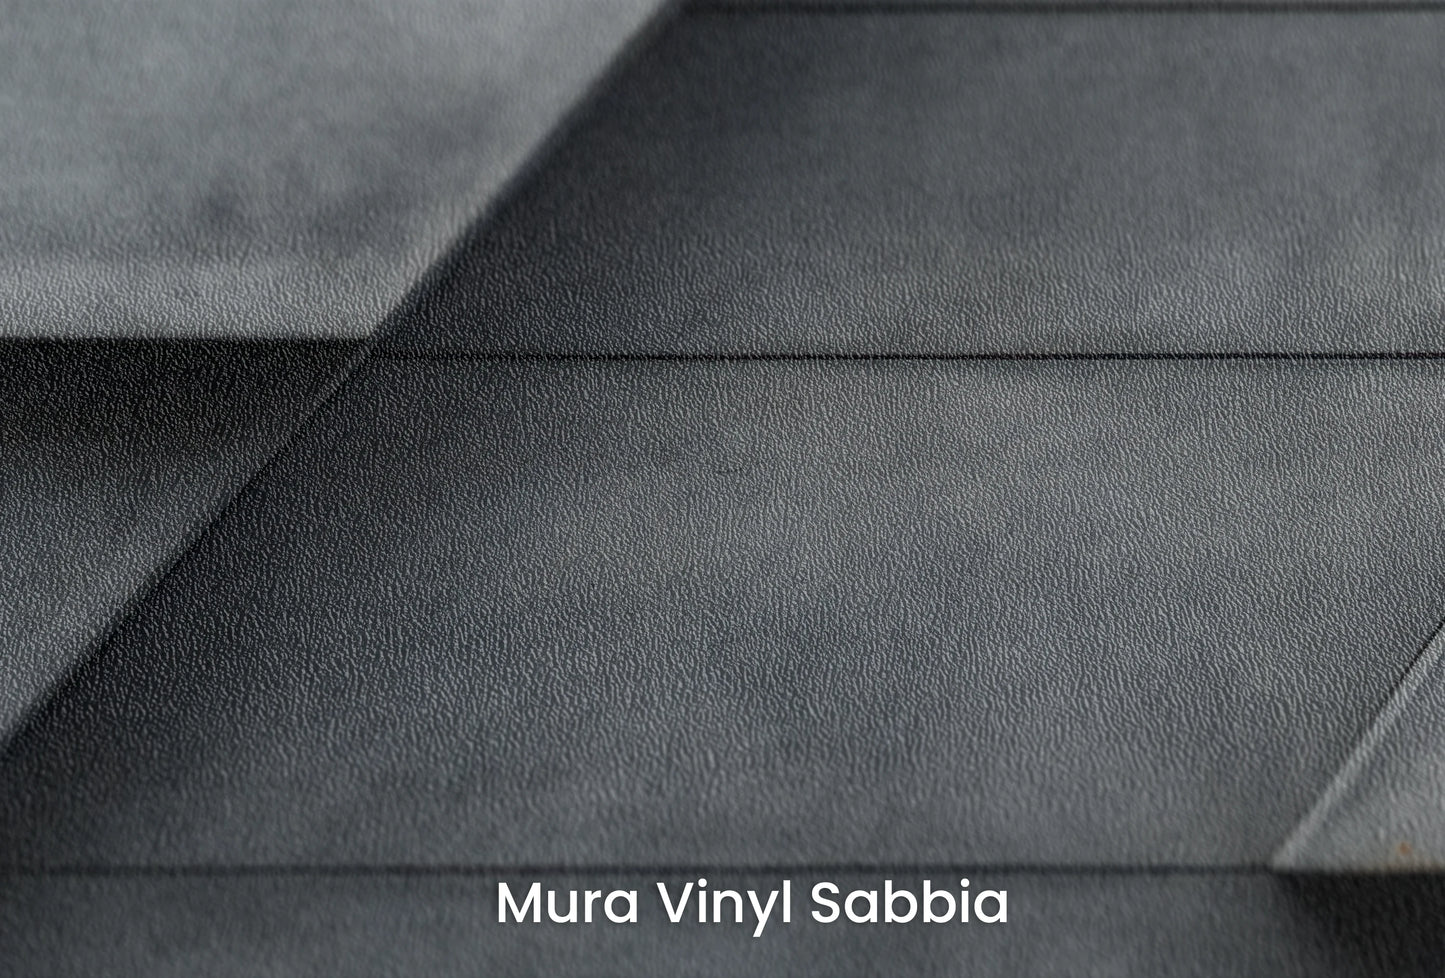 Zbliżenie na artystyczną fototapetę o nazwie Modern Layers na podłożu Mura Vinyl Sabbia struktura grubego ziarna piasku.